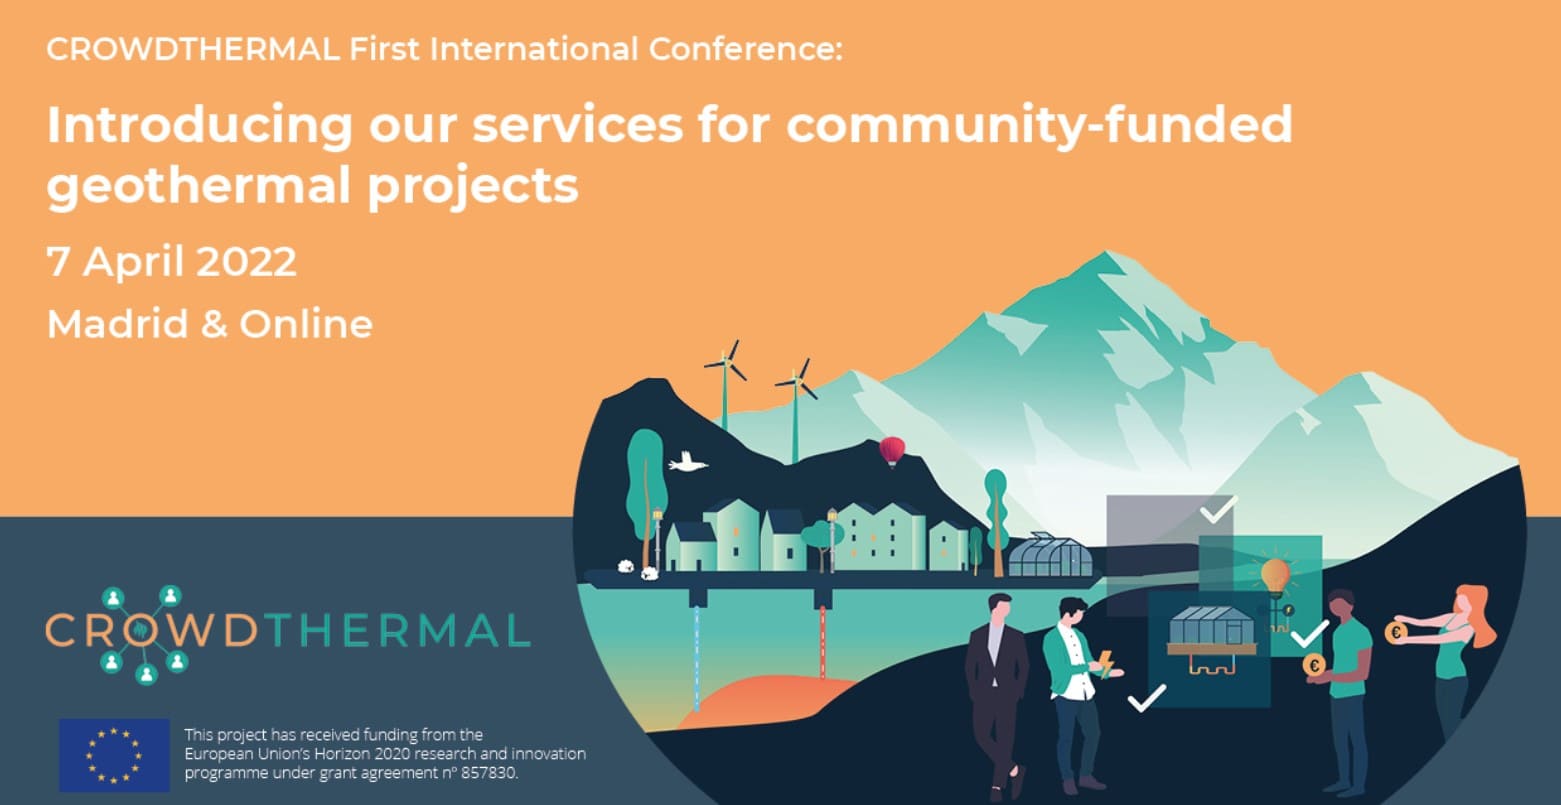 Conferencia internacional CrowdThermal_Presentación de nuestros servicios para proyectos feotérmicos financiados por la comunidad - CrowdfundingHub